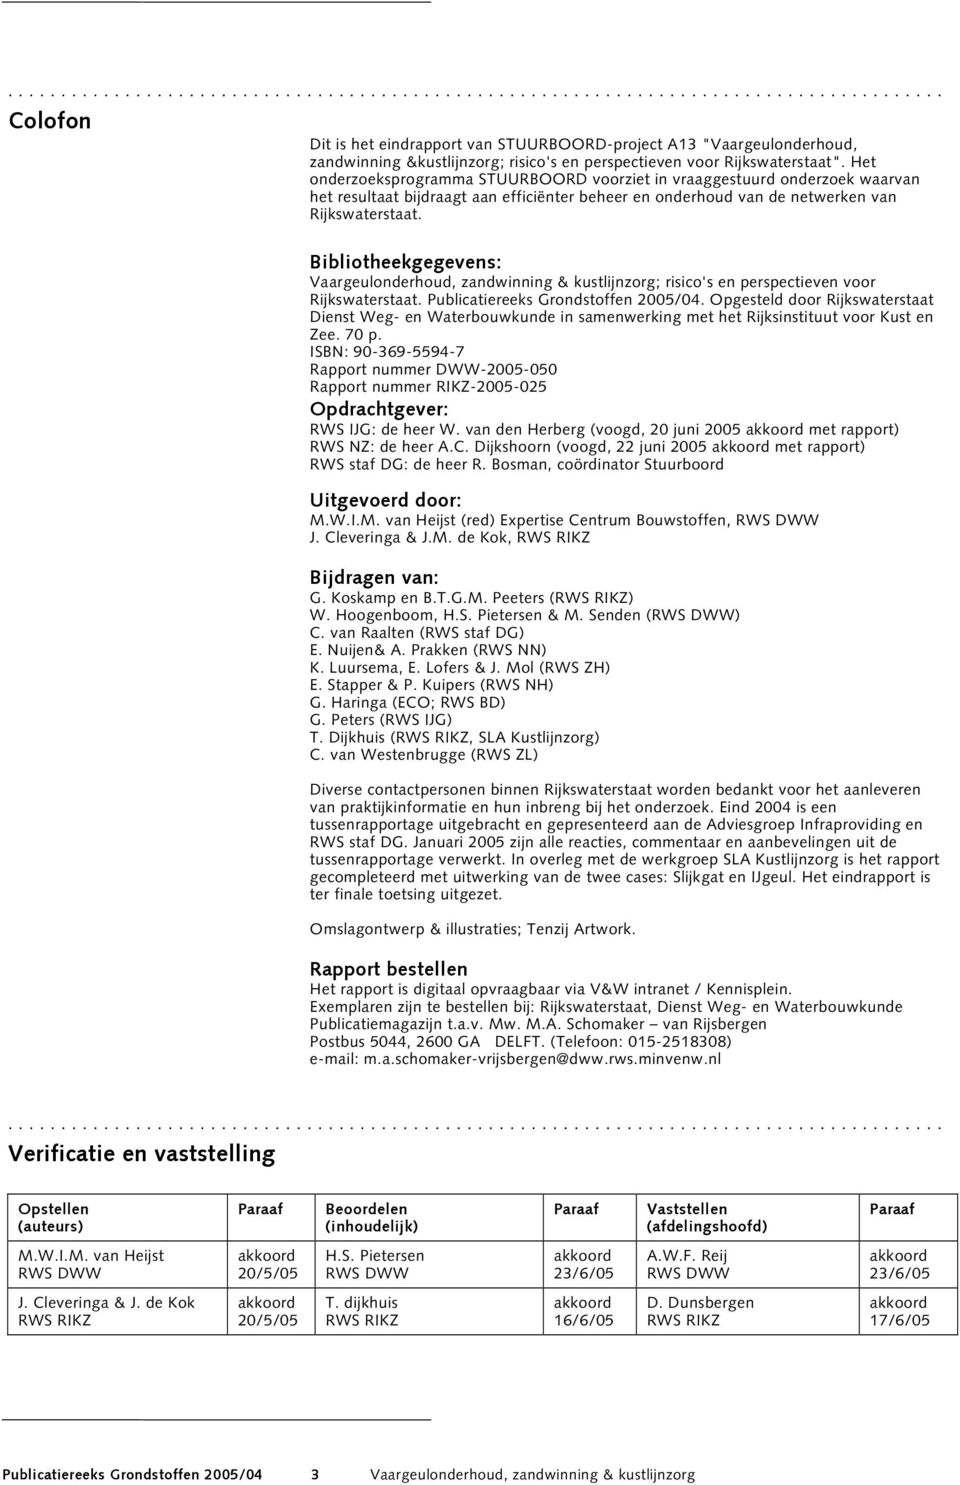 Bibliotheekgegevens: Vaargeulonderhoud, zandwinning & kustlijnzorg; risico's en perspectieven voor Rijkswaterstaat. Publicatiereeks Grondstoffen 2005/04.